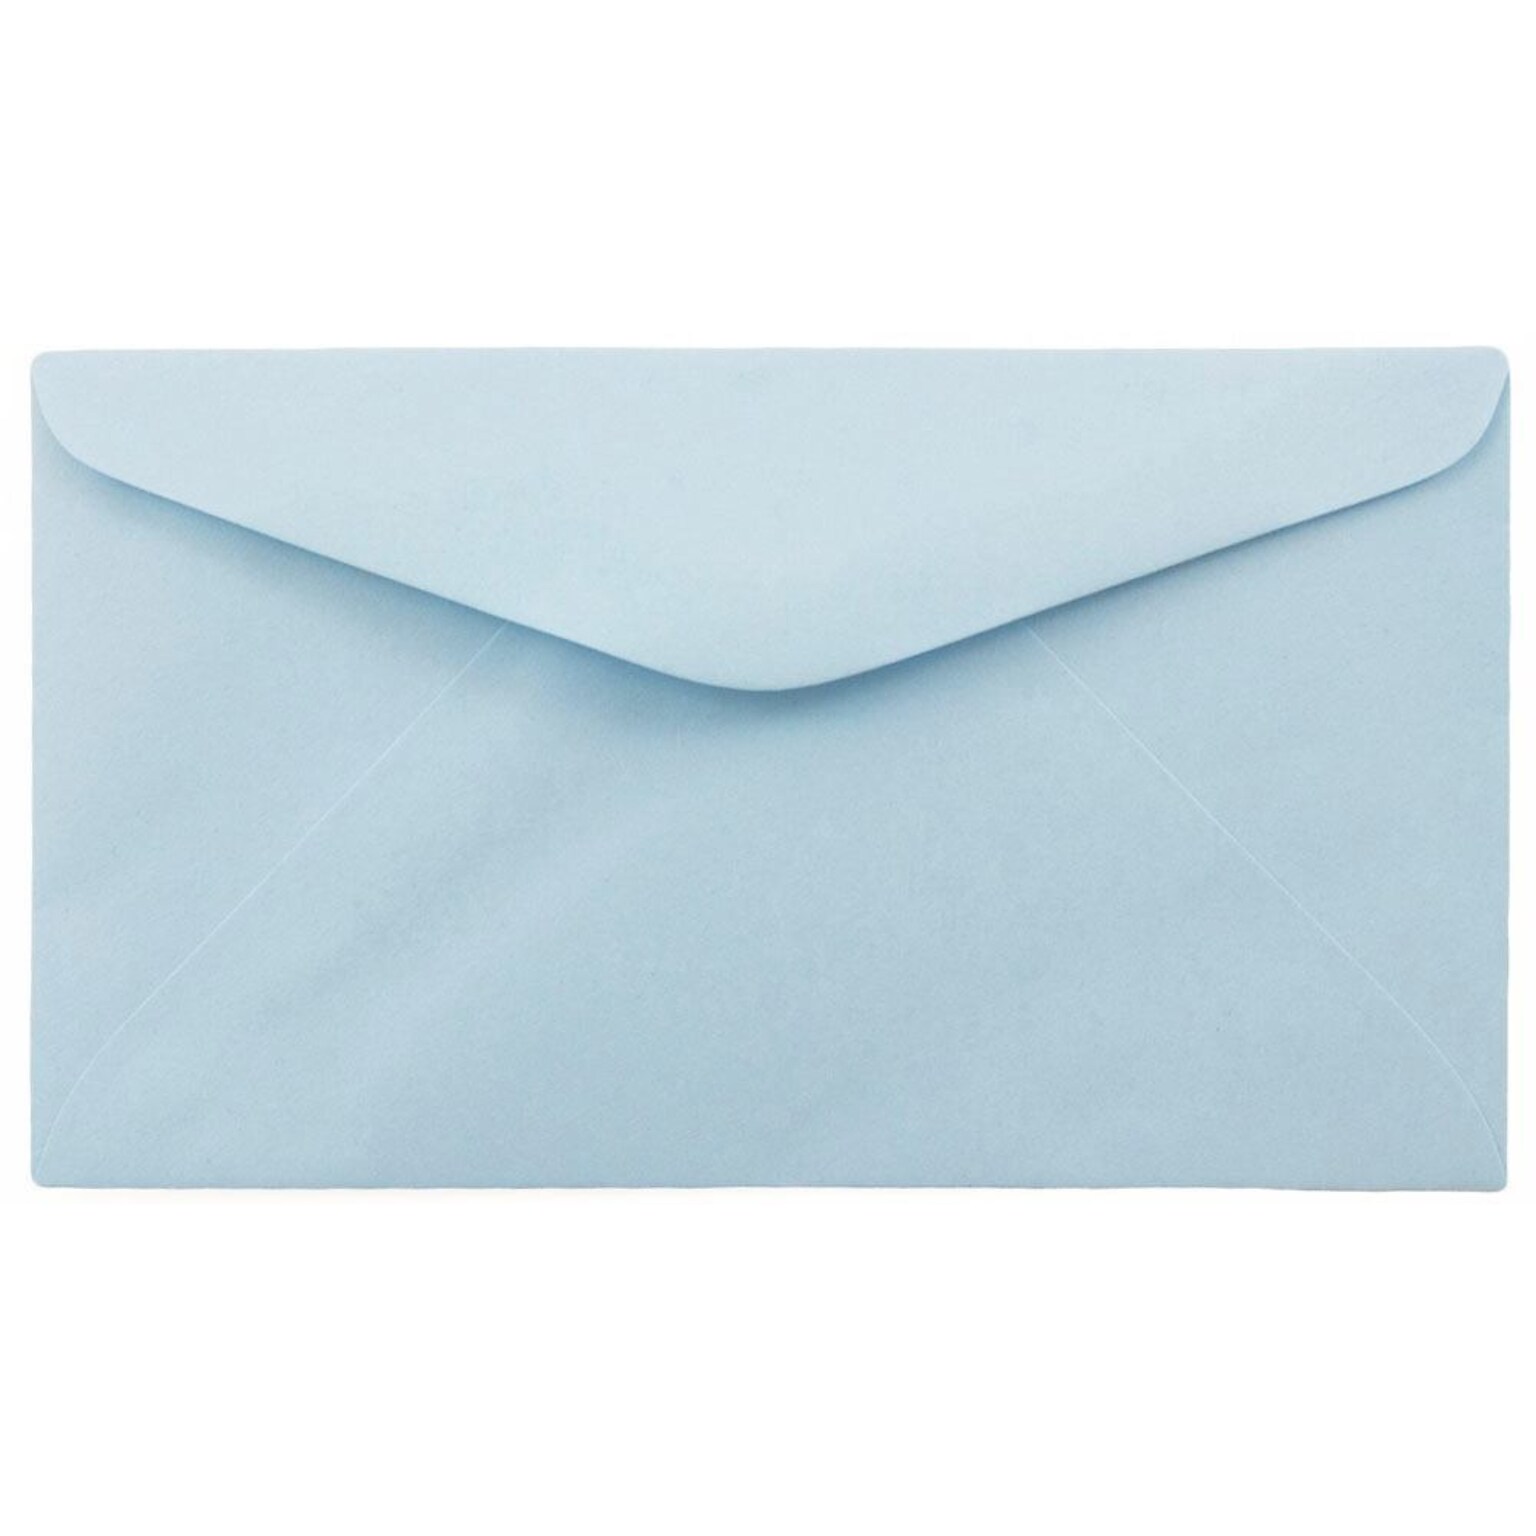 JAM Paper #6 3/4 Business Envelope, 3 5/8 x 6 1/2, Light Blue, 25/Pack (557612641B)